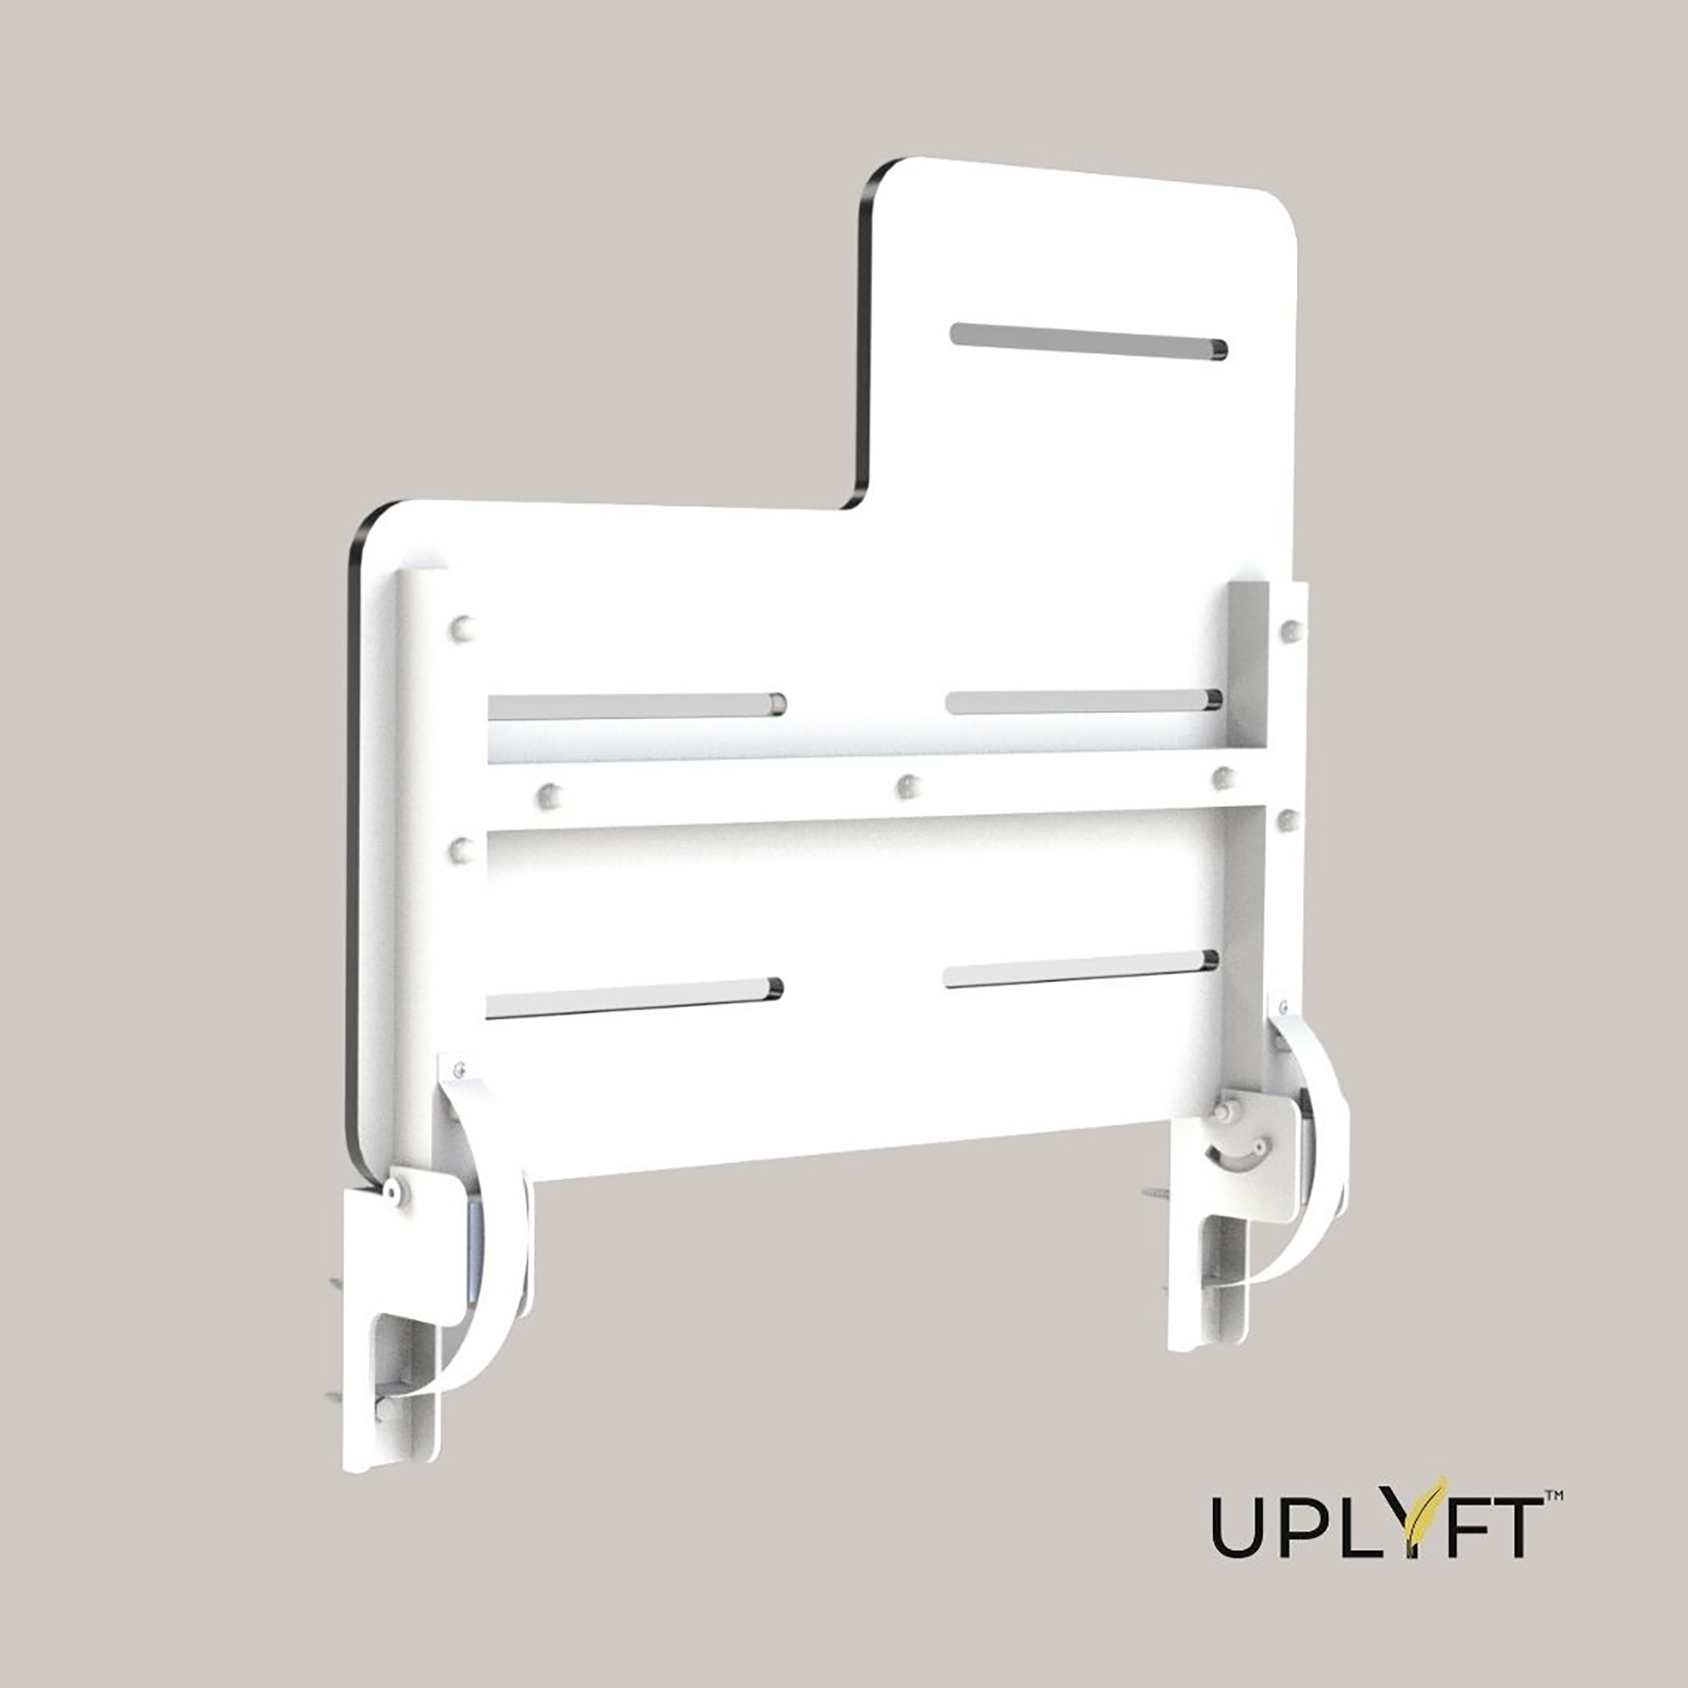 Uplyft L-Shaped Wall Mount Shower Seat | CSI Bathware | Unterwäsche-Bodies